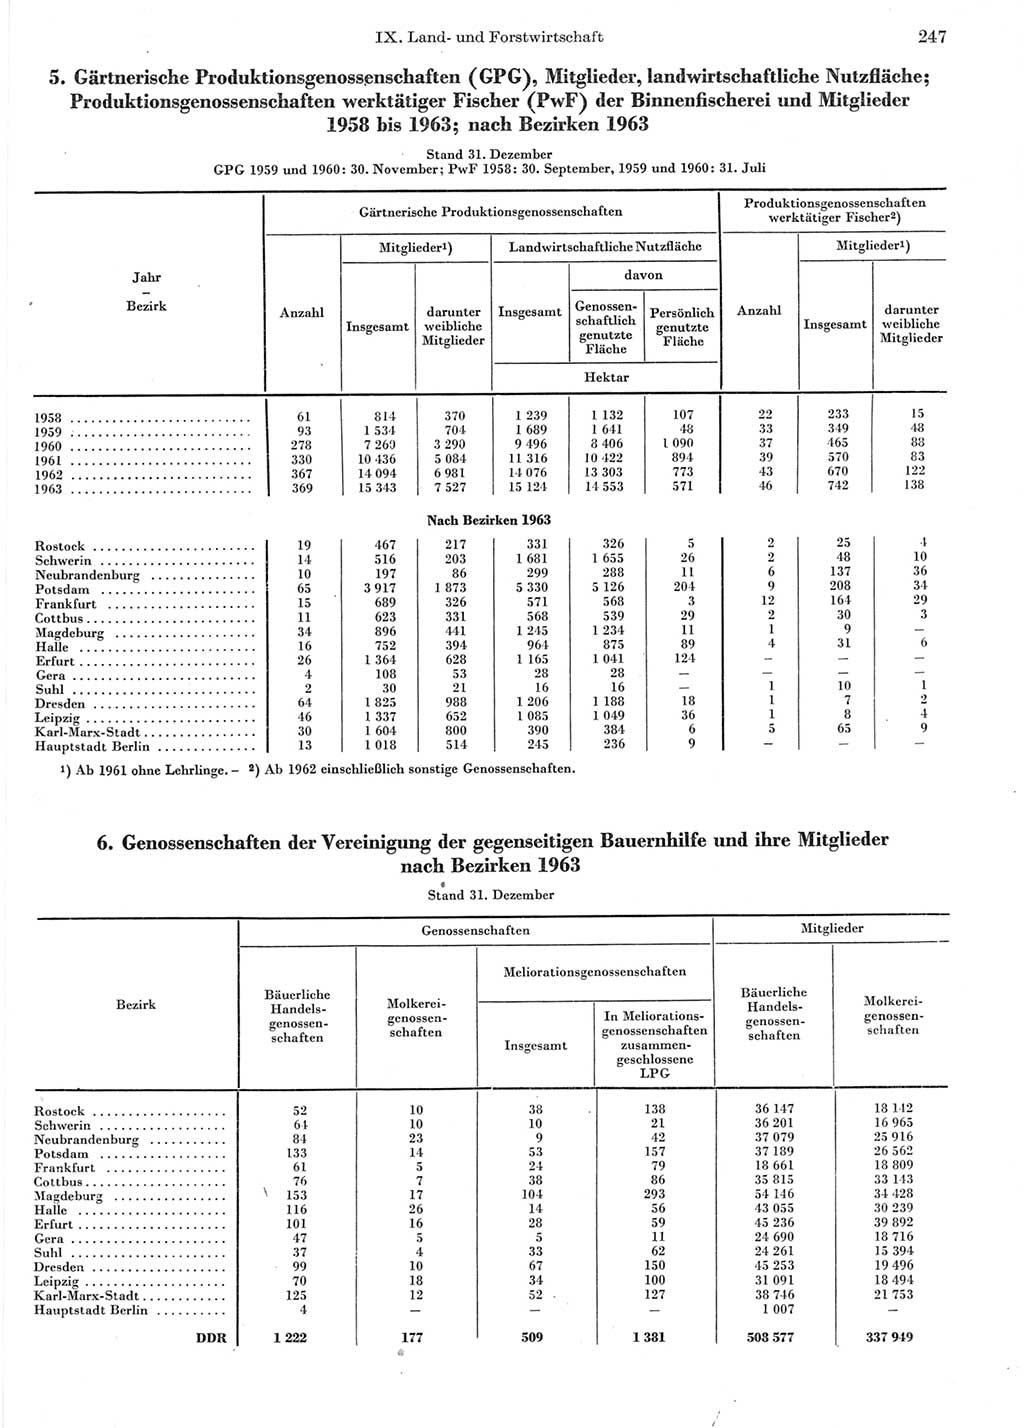 Statistisches Jahrbuch der Deutschen Demokratischen Republik (DDR) 1964, Seite 247 (Stat. Jb. DDR 1964, S. 247)